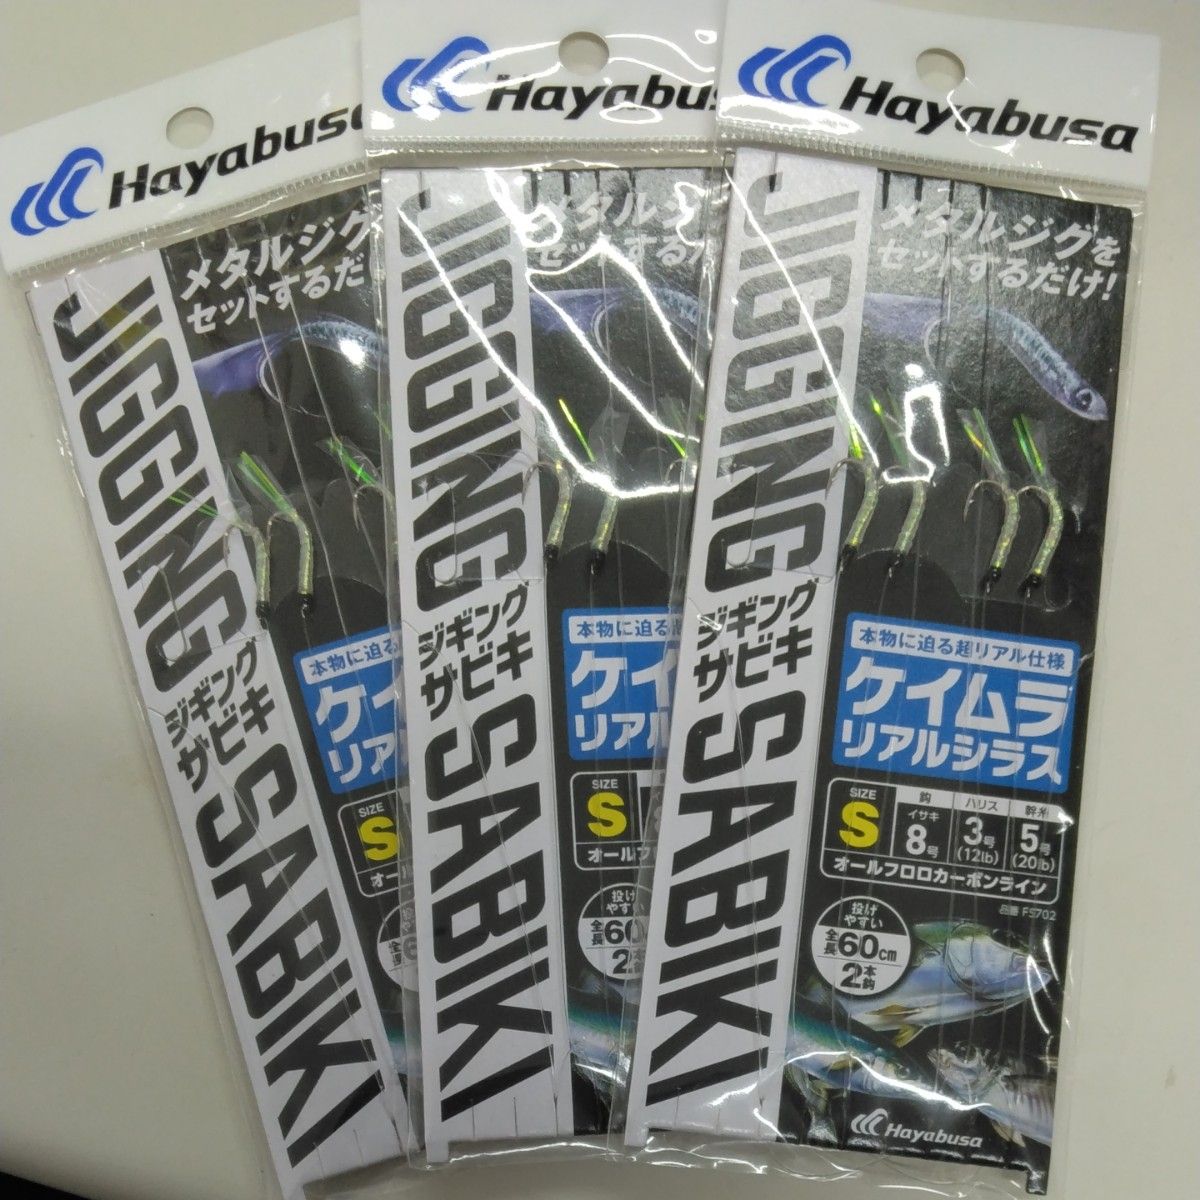 ハヤブサ 堤防ジギングサビキEX ケイムラリアルシラス FS702 Sサイズ3枚セット販売 Hayabusa ハヤブサ